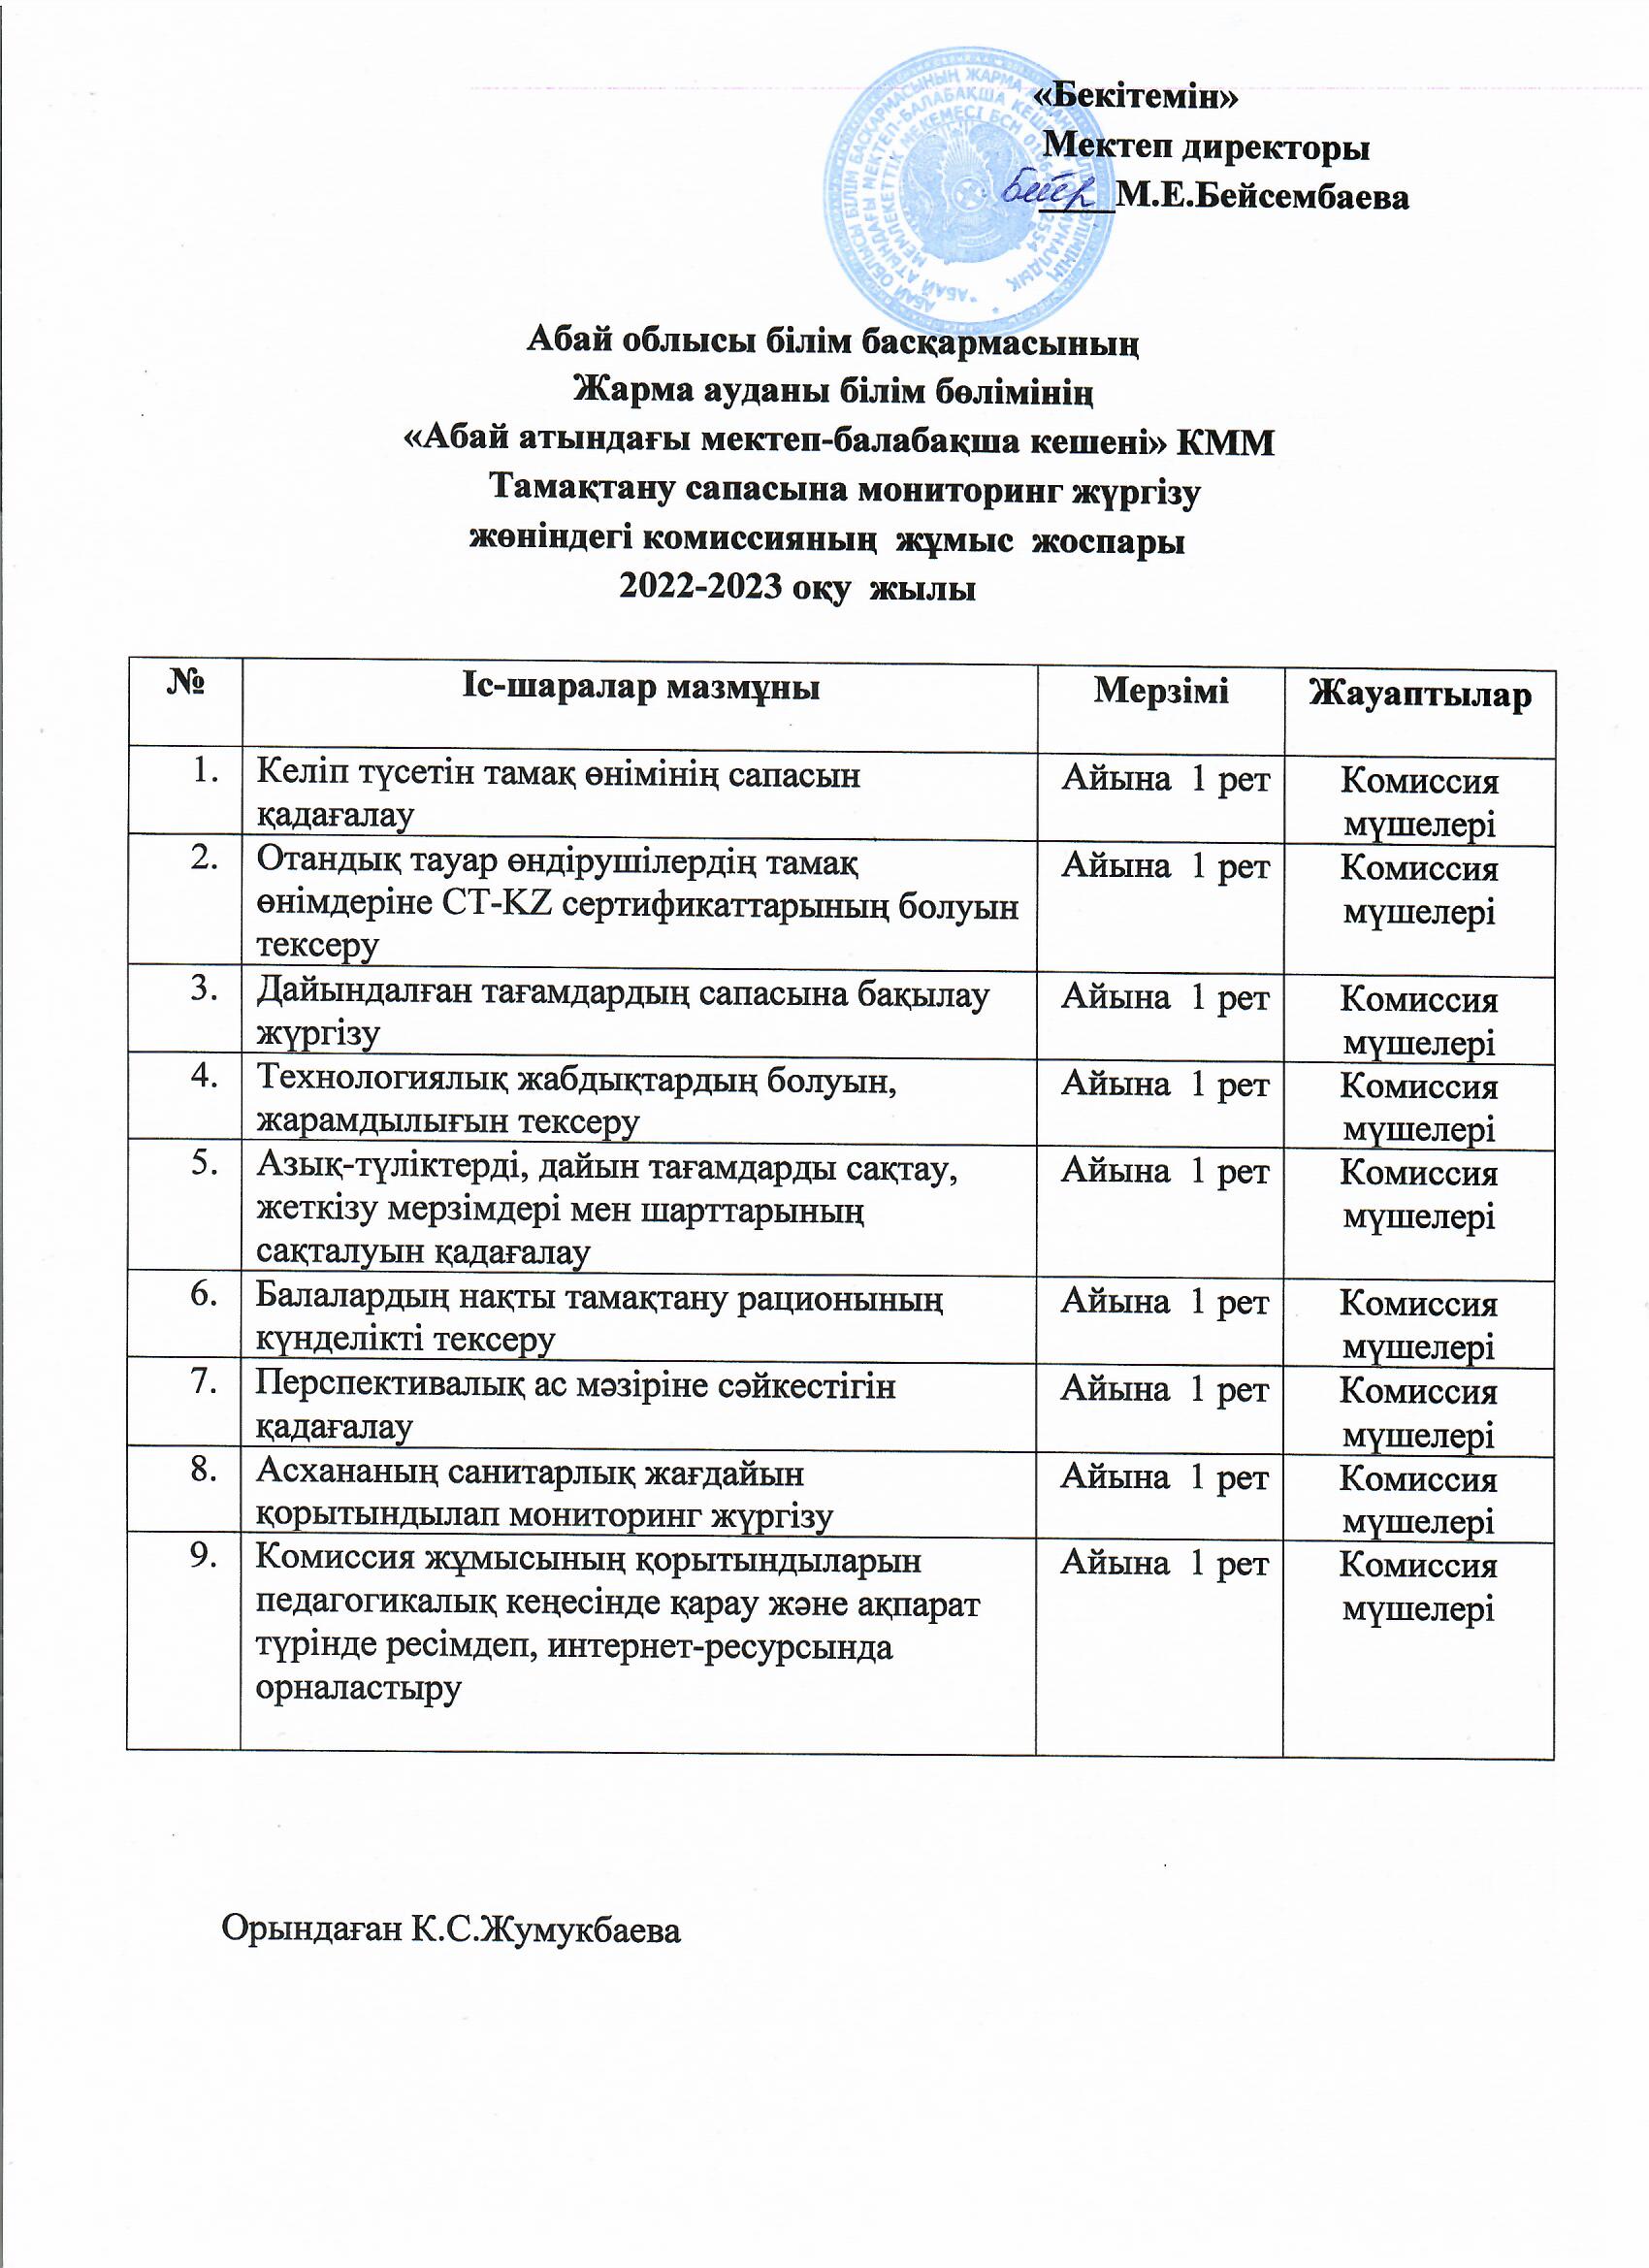 Тамақтану сапасына мониторинг жүргізу  жөніндегі комиссияның  жұмыс  жоспары 2022-2023 оқу жылы Казан